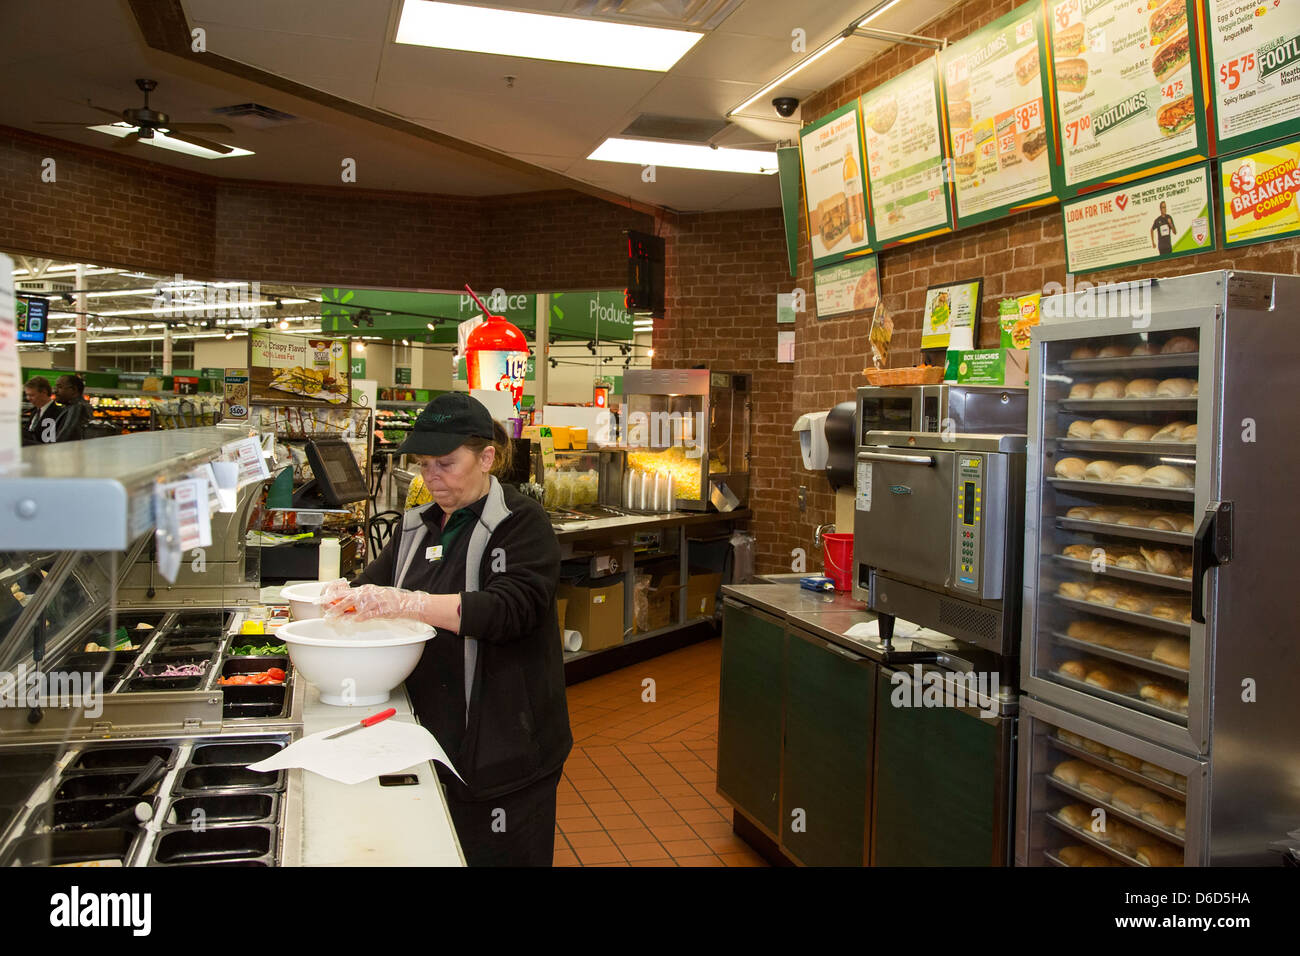 Sterling Heights, Michigan - ein Arbeiter bereitet Essen zu einer U-Bahn Fast-Food-Franchise befindet sich in einem Walmart-Geschäft. Stockfoto